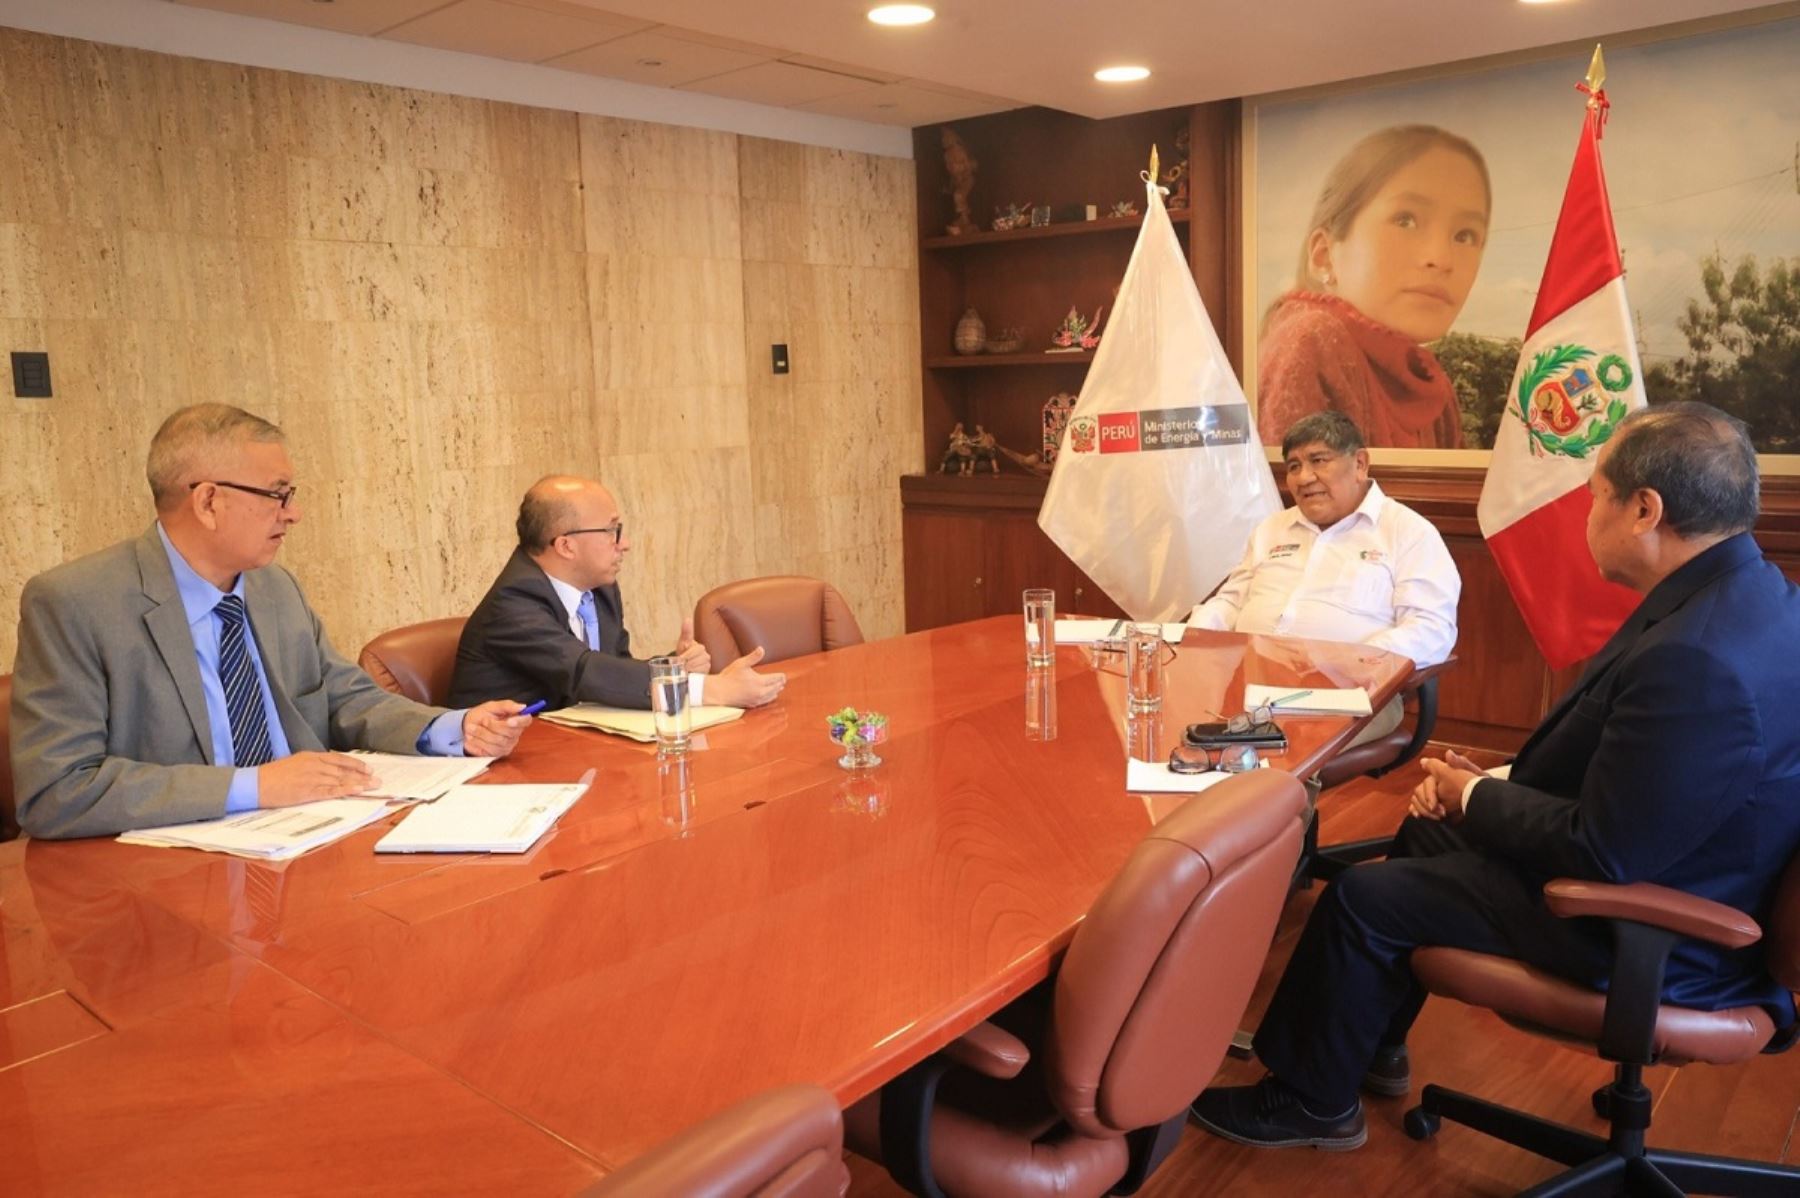 Reunión de dirigentes del Sindicato de trabajadores administrativos de Petroperú y el ministro de Energía y Minas, Romulo Mucho. Foto: Cortesía.